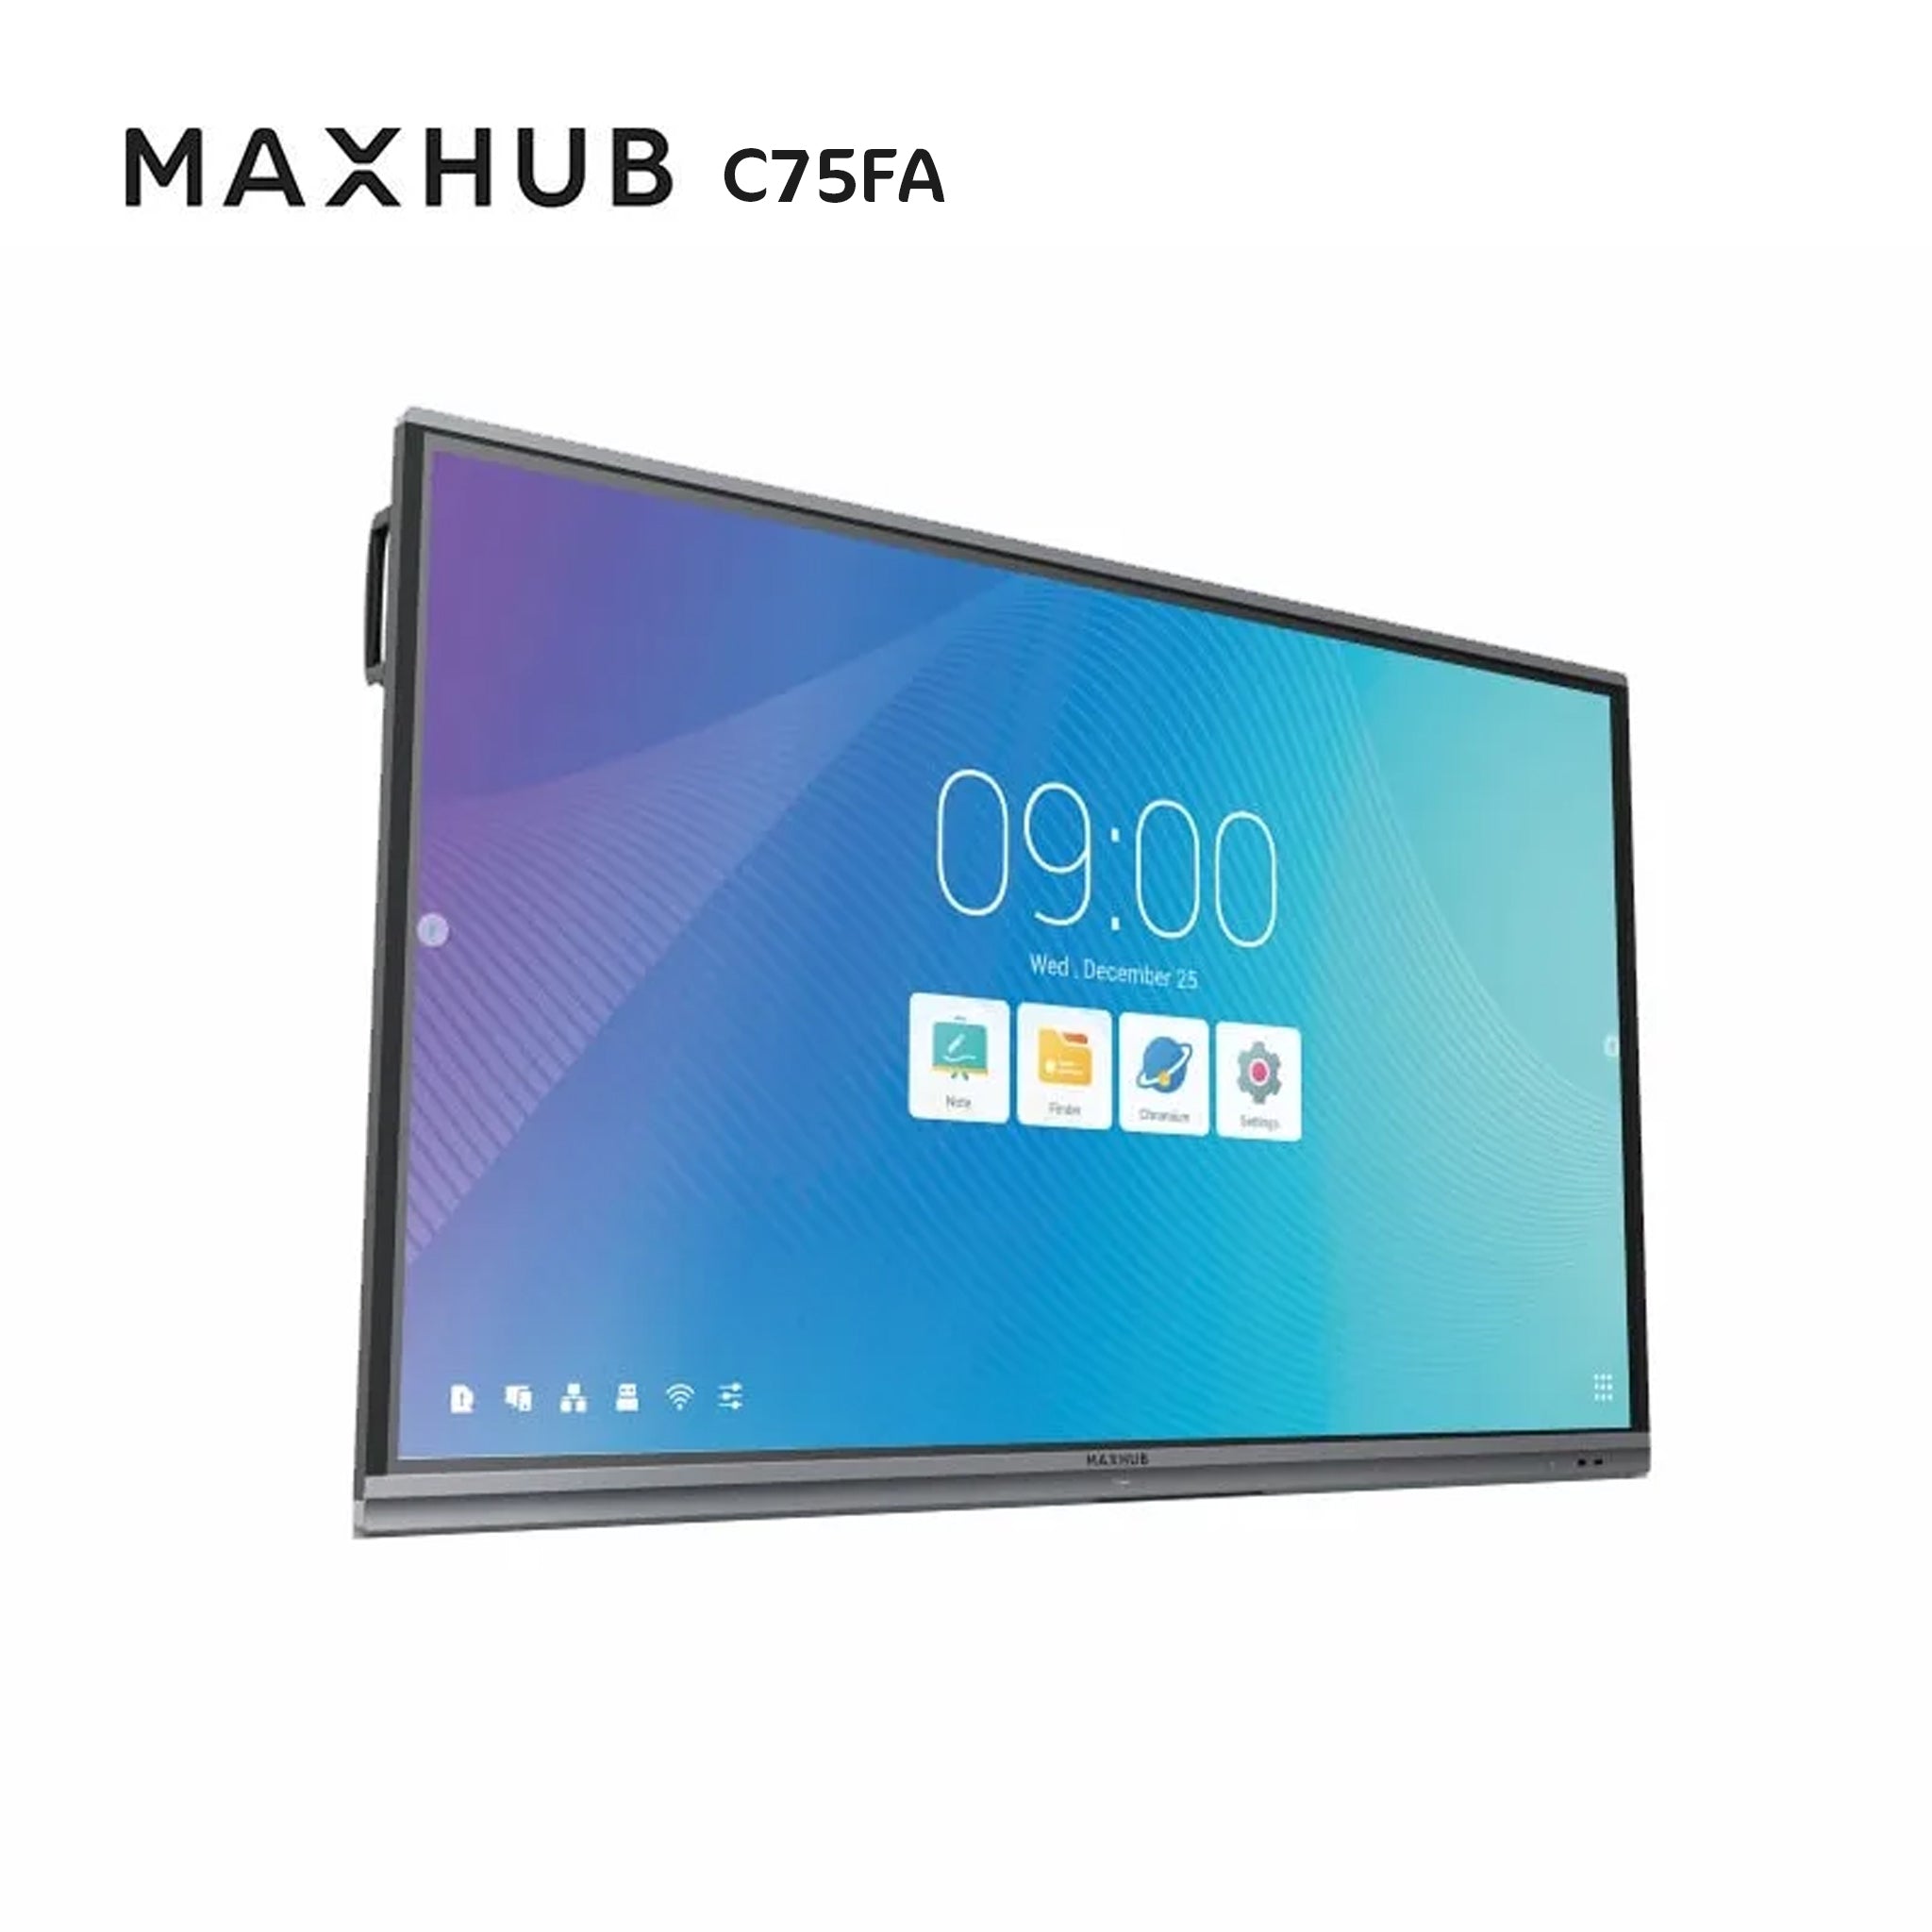 MAXHUB C75FA - Classic Interactive Touch Screen C75FA | AL-VoIP Store